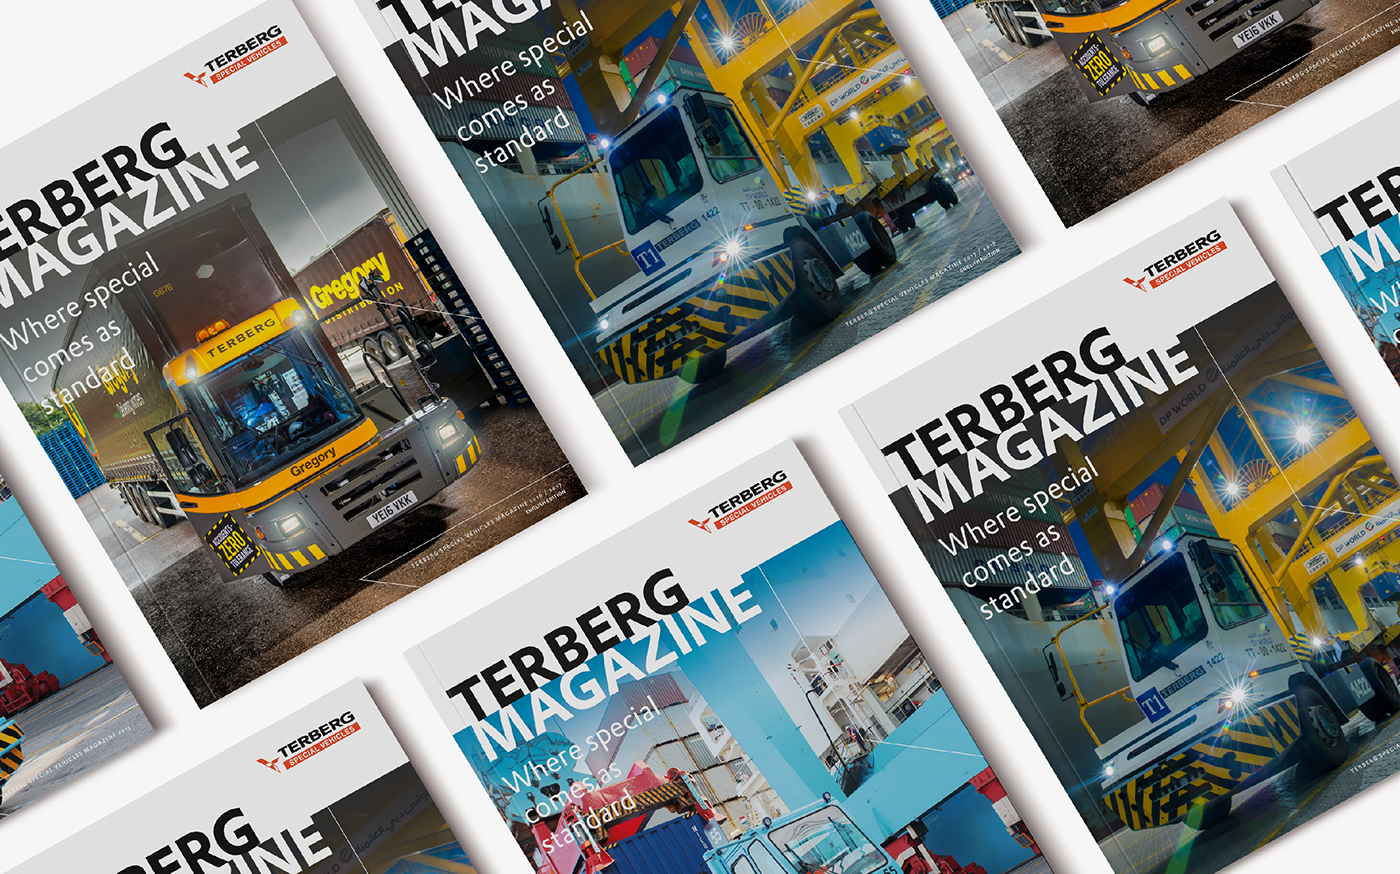 magazine Layout ports Harbours trucks tractors Jacco van Rooij credo eindhoven